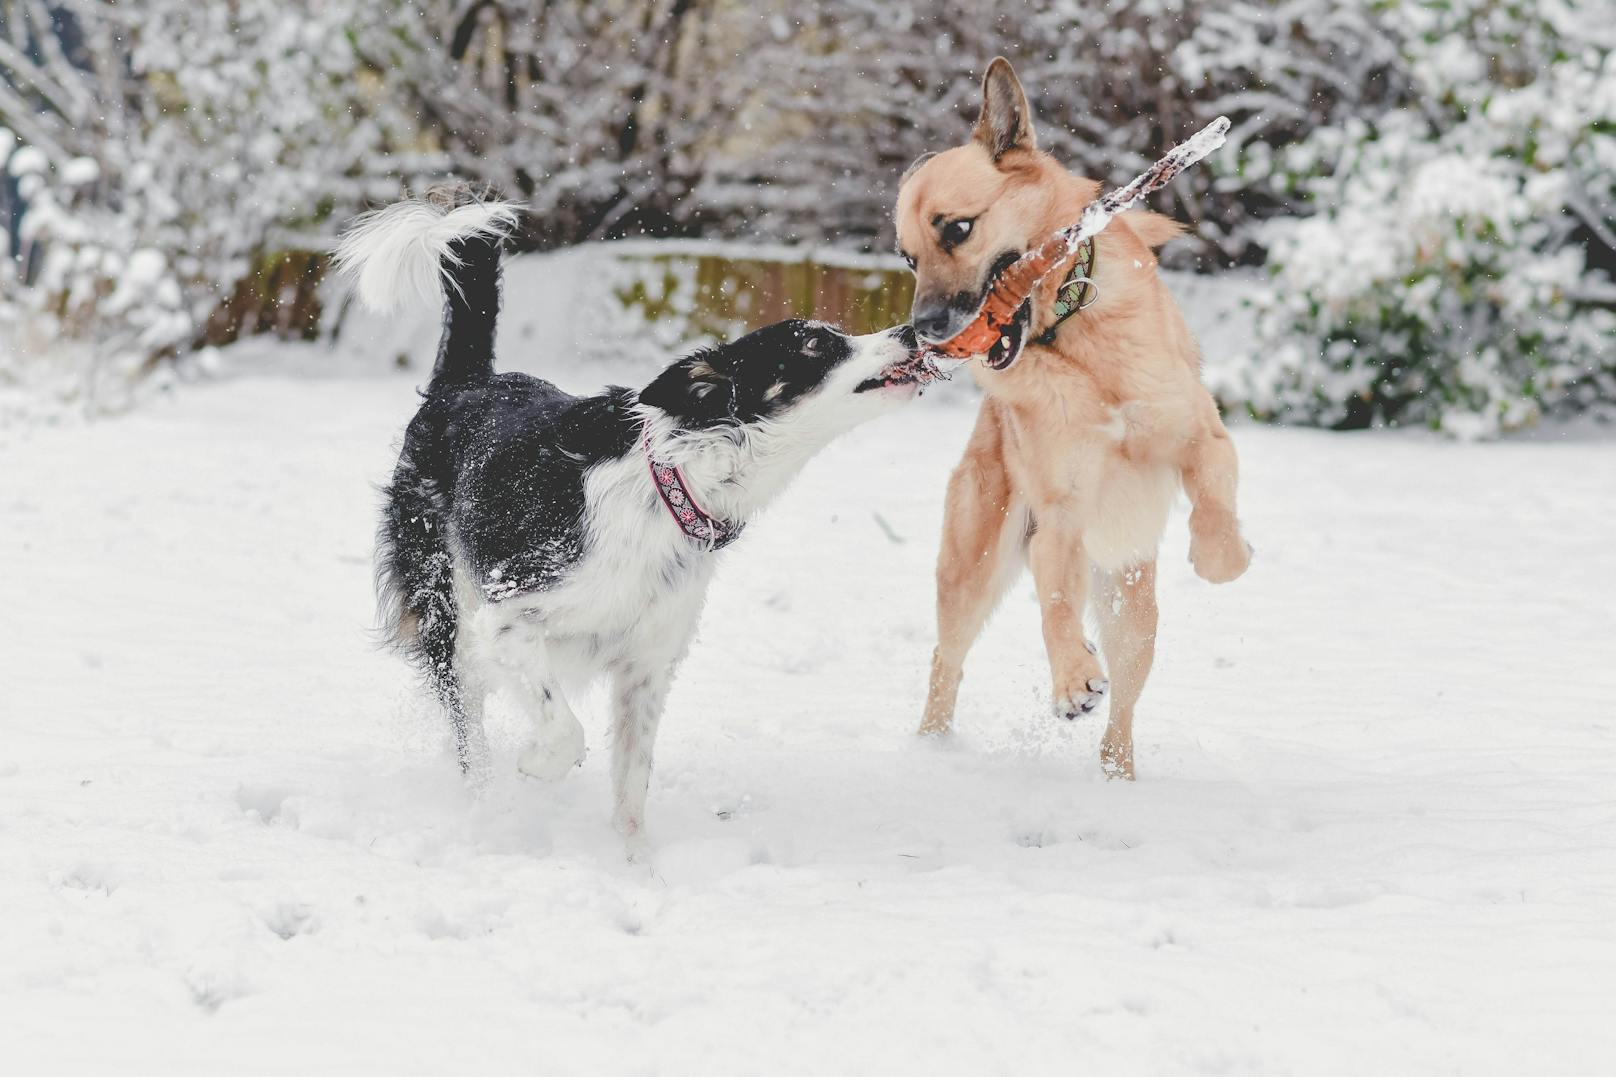 Unsere Haustiere lieben Schnee - zumindest viele! Sendet uns eure lustigsten Pics. 